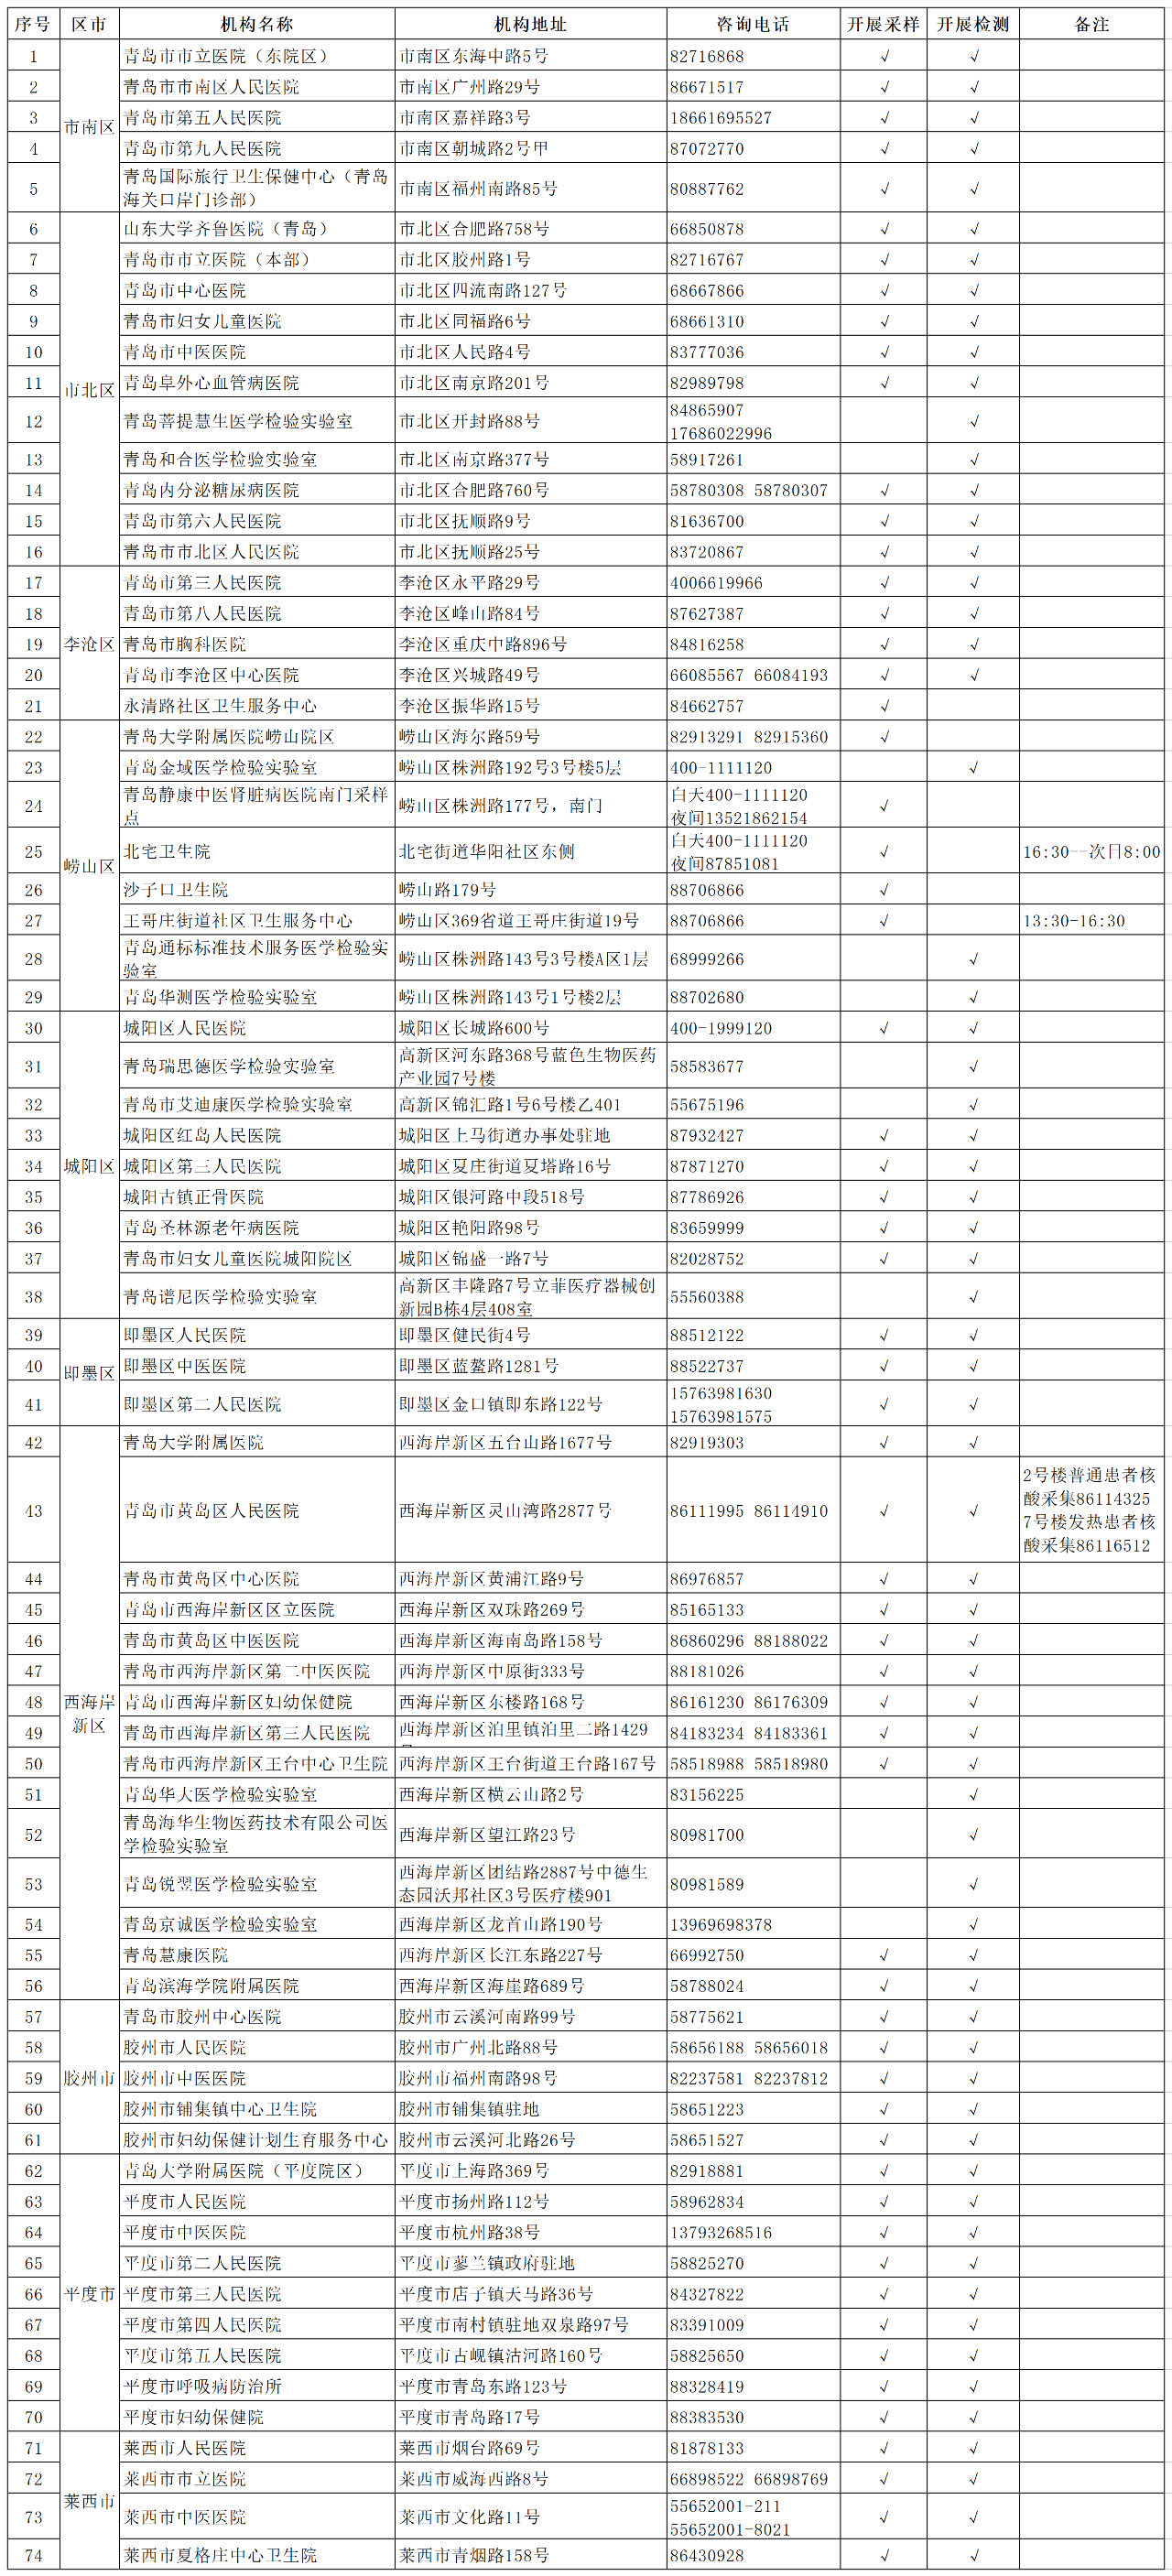 青岛新冠病毒核酸采样点、核酸检测机构信息一览表